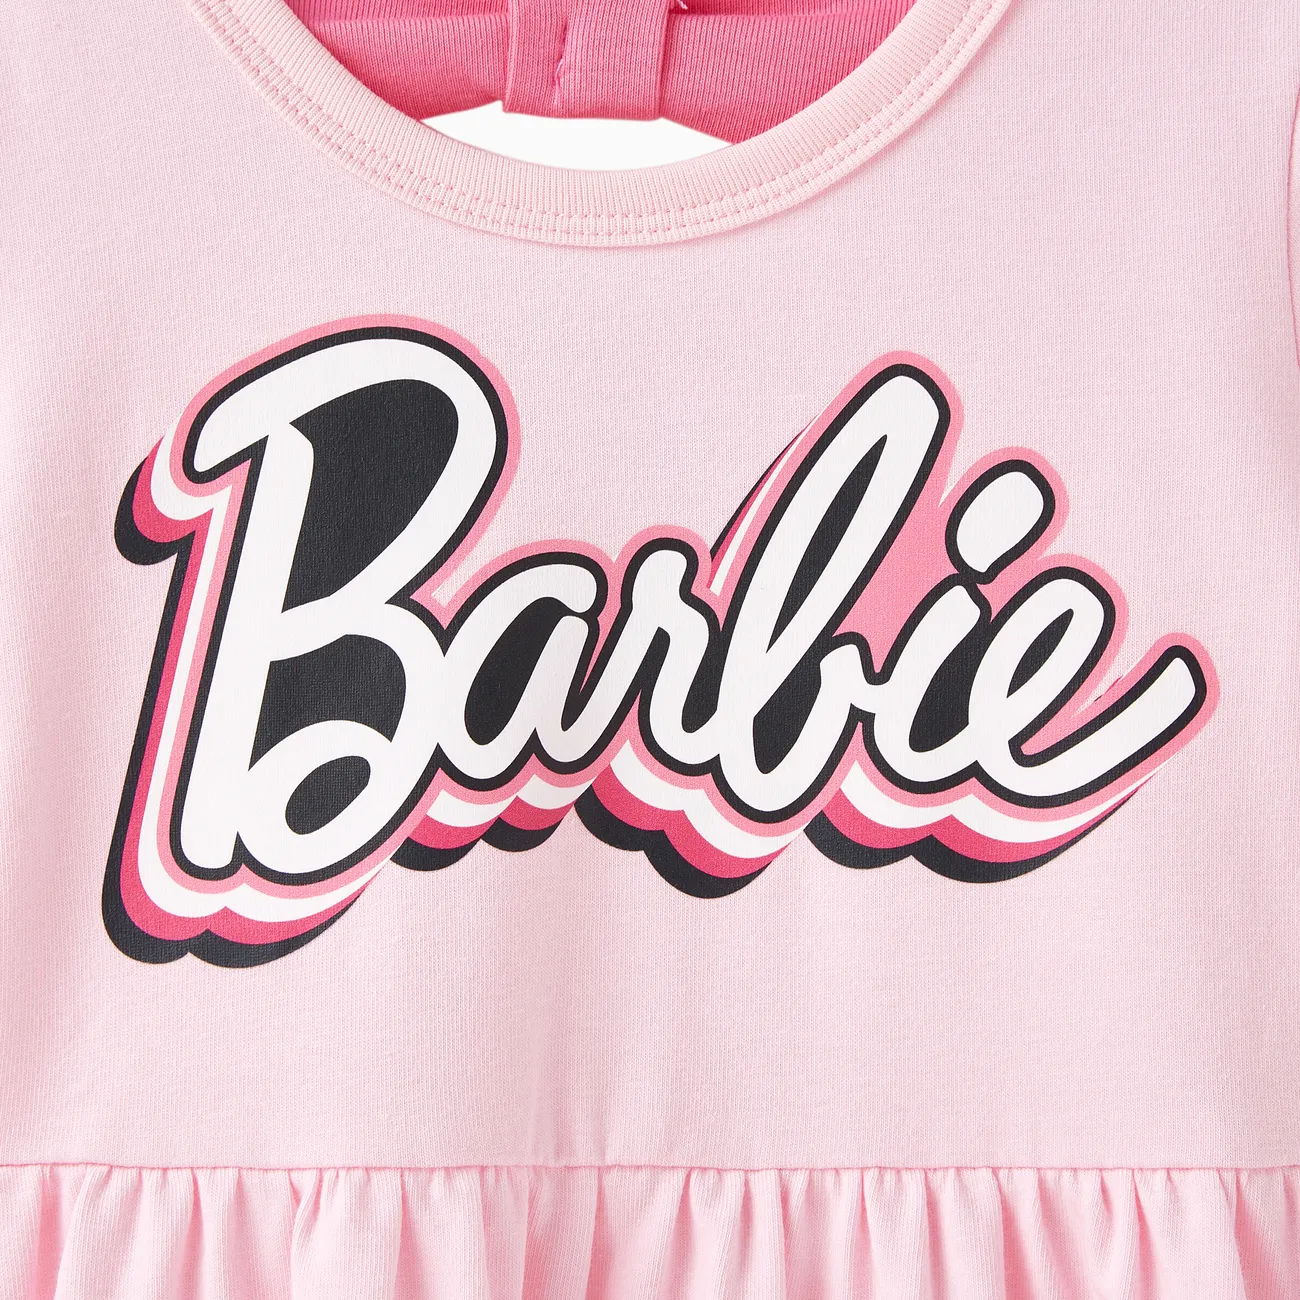 Barbie IP Ragazza Nodi Dolce Vestiti Rosa Chiaro big image 1